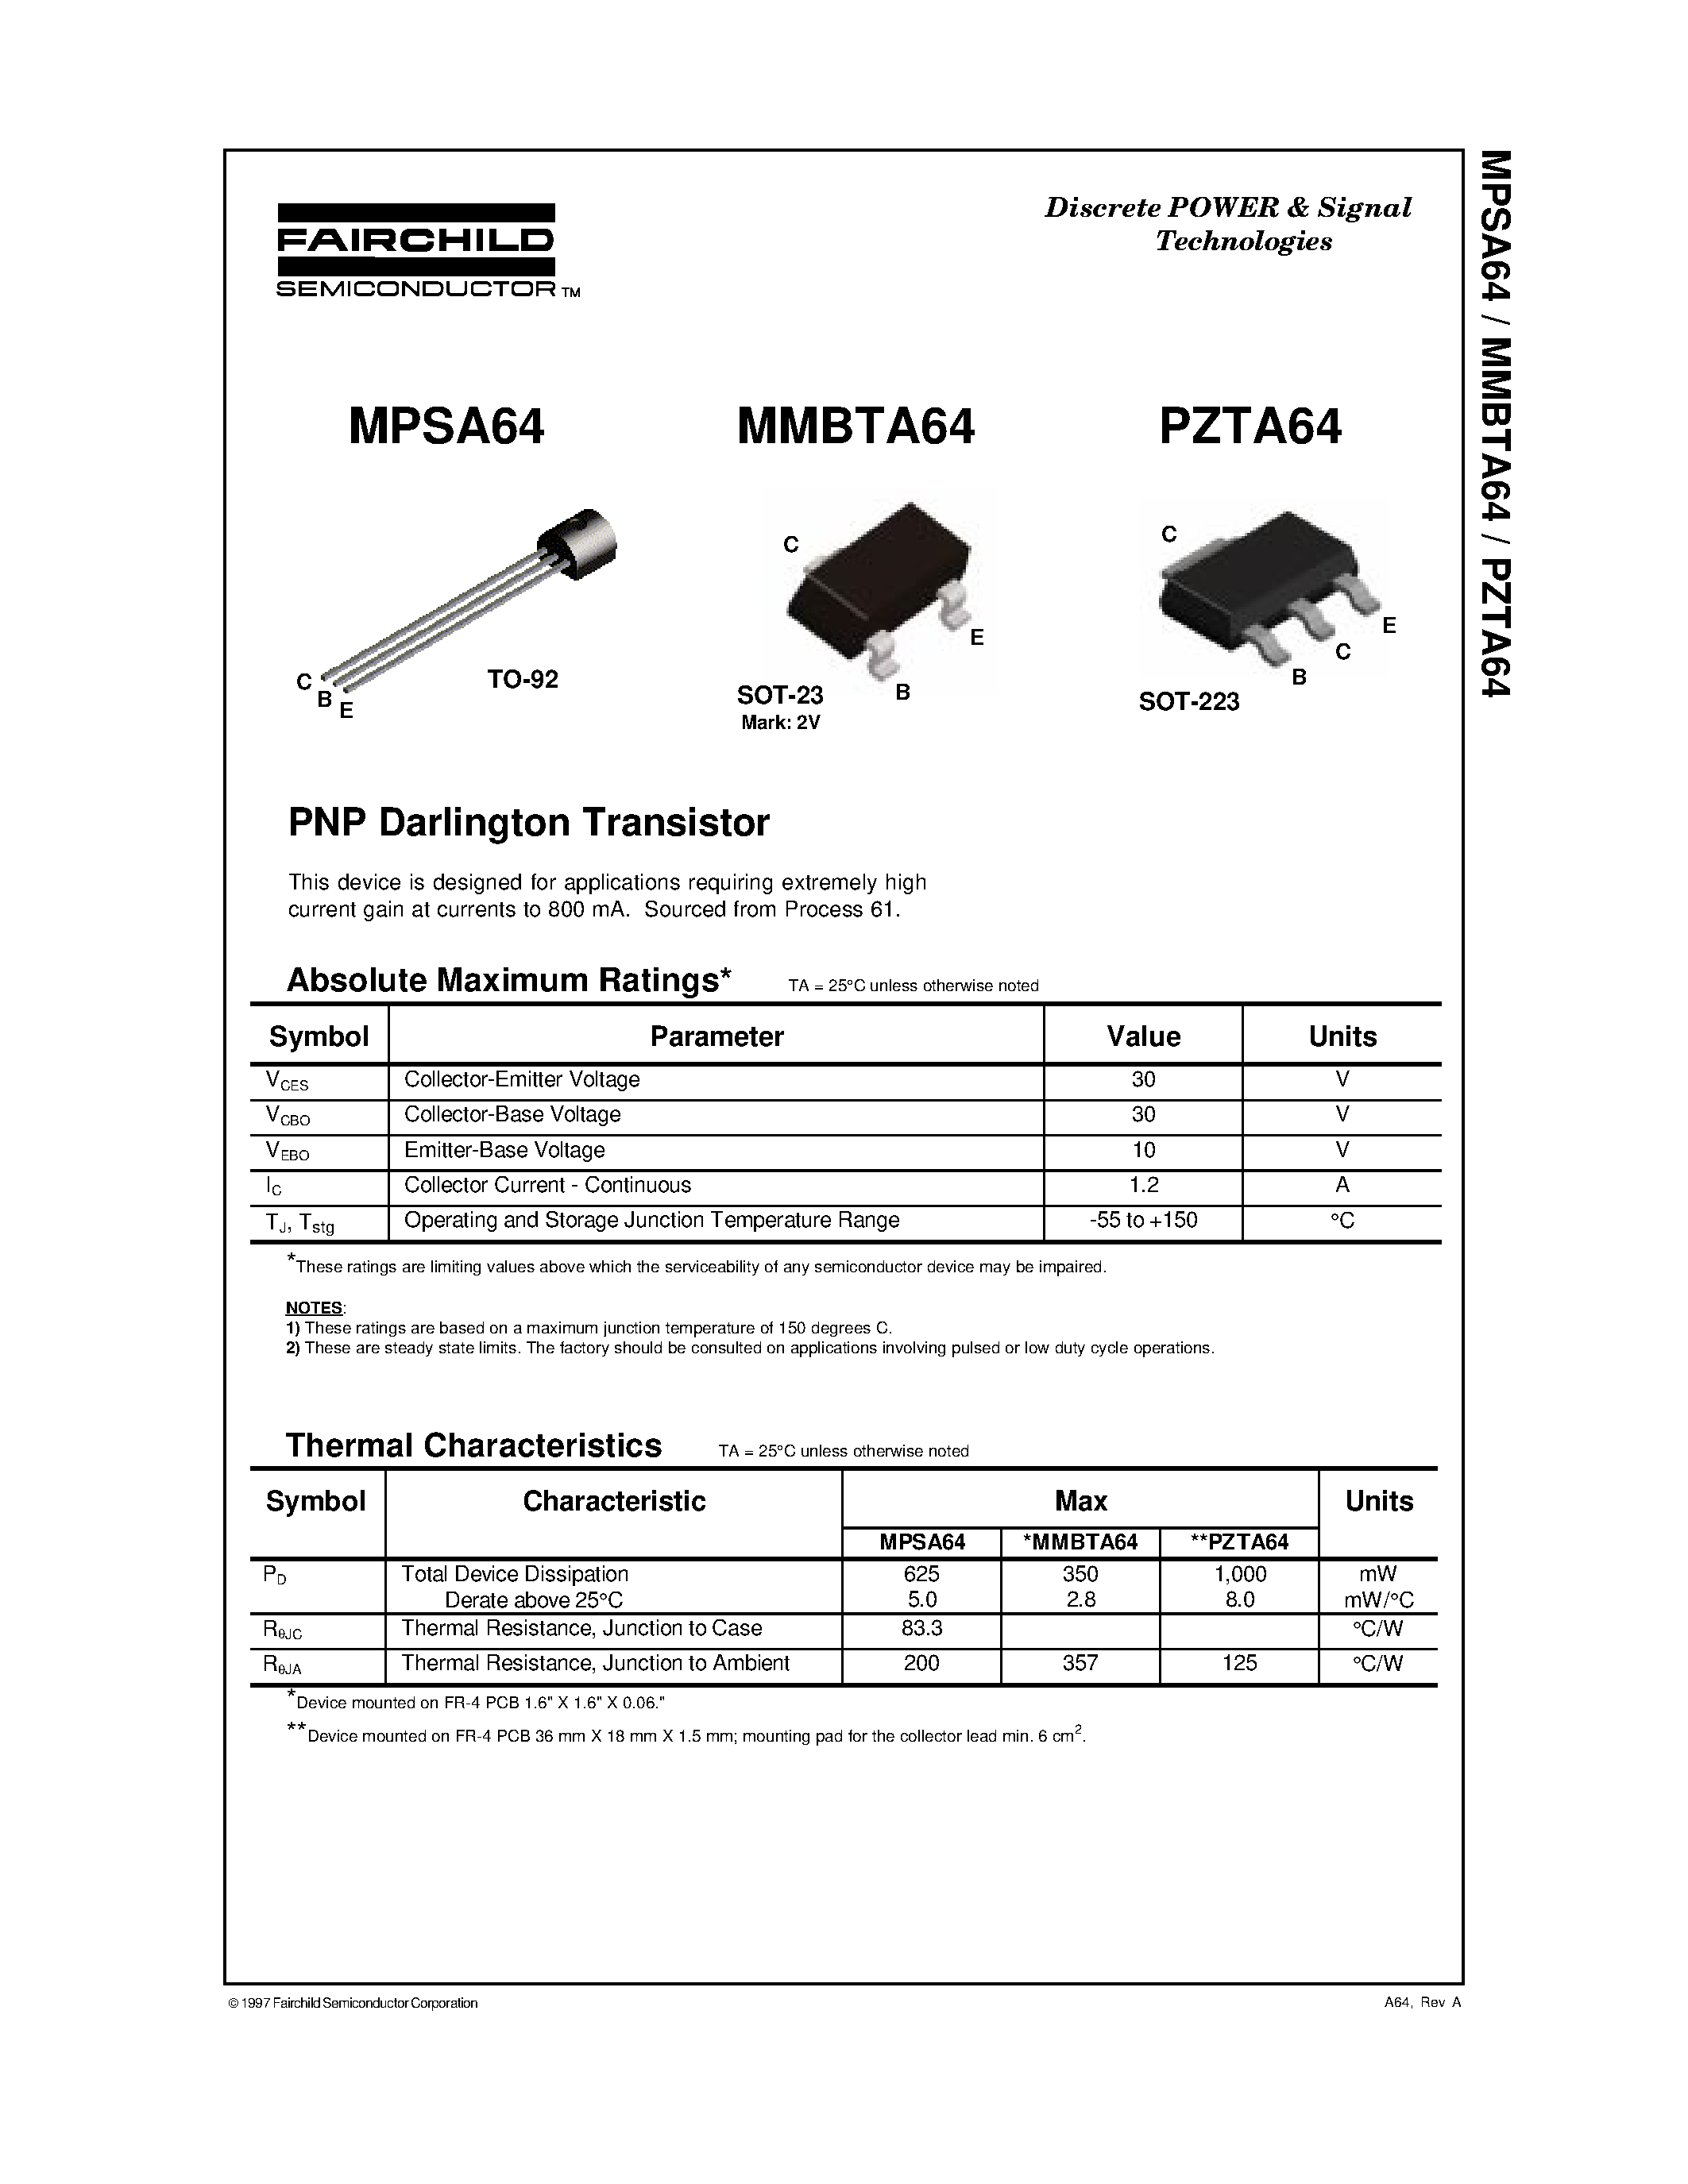 Даташит PZTA64 - PNP Darlington Transistor страница 1